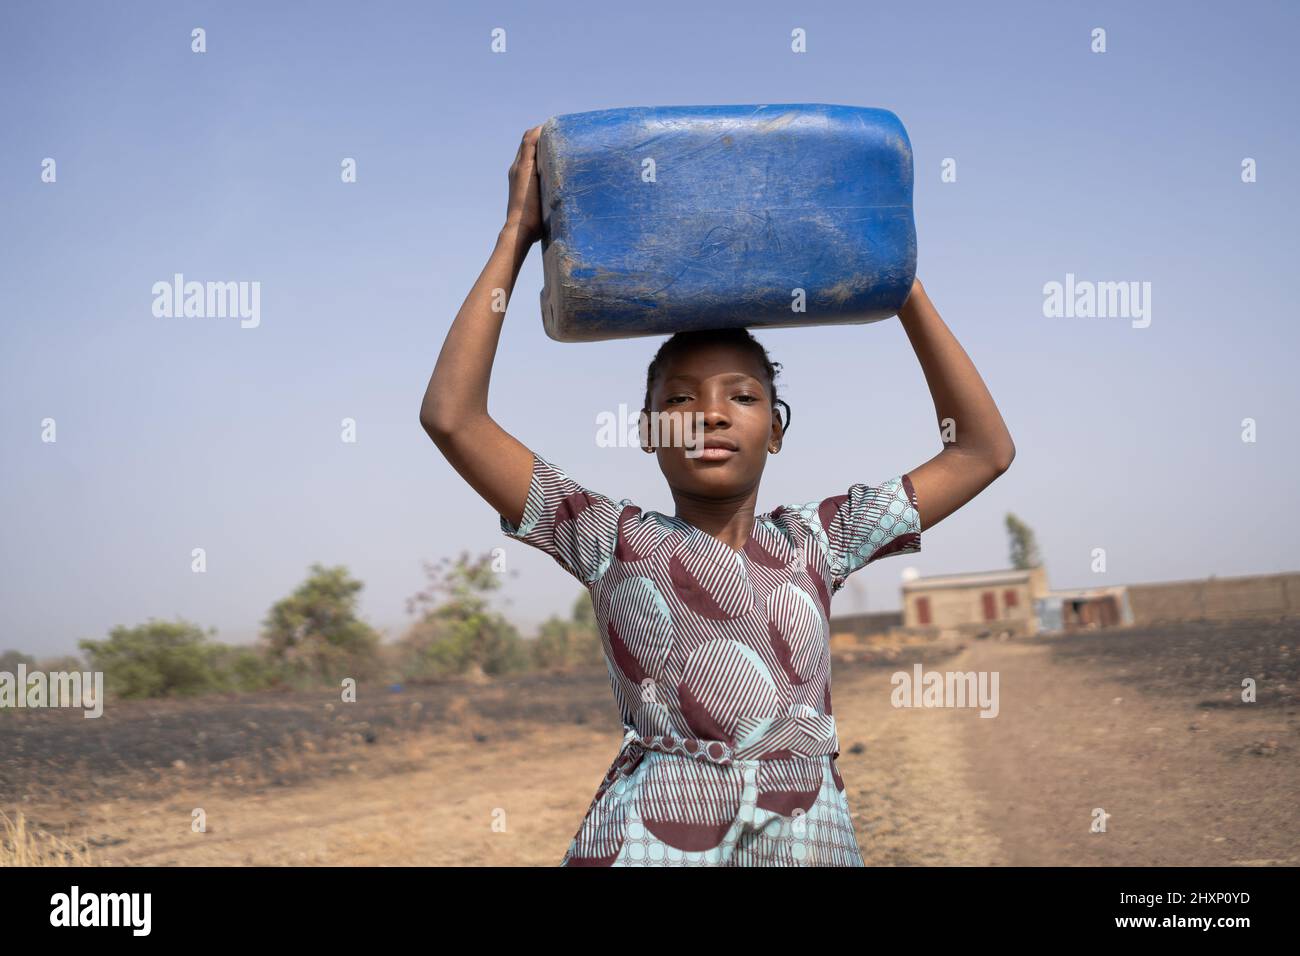 Fière jeune fille africaine qui a l'air de marcher depuis la maison isolée de ses parents jusqu'au village lointain, portant une bouteille d'eau sur sa tête ; le droit de l'homme à Banque D'Images